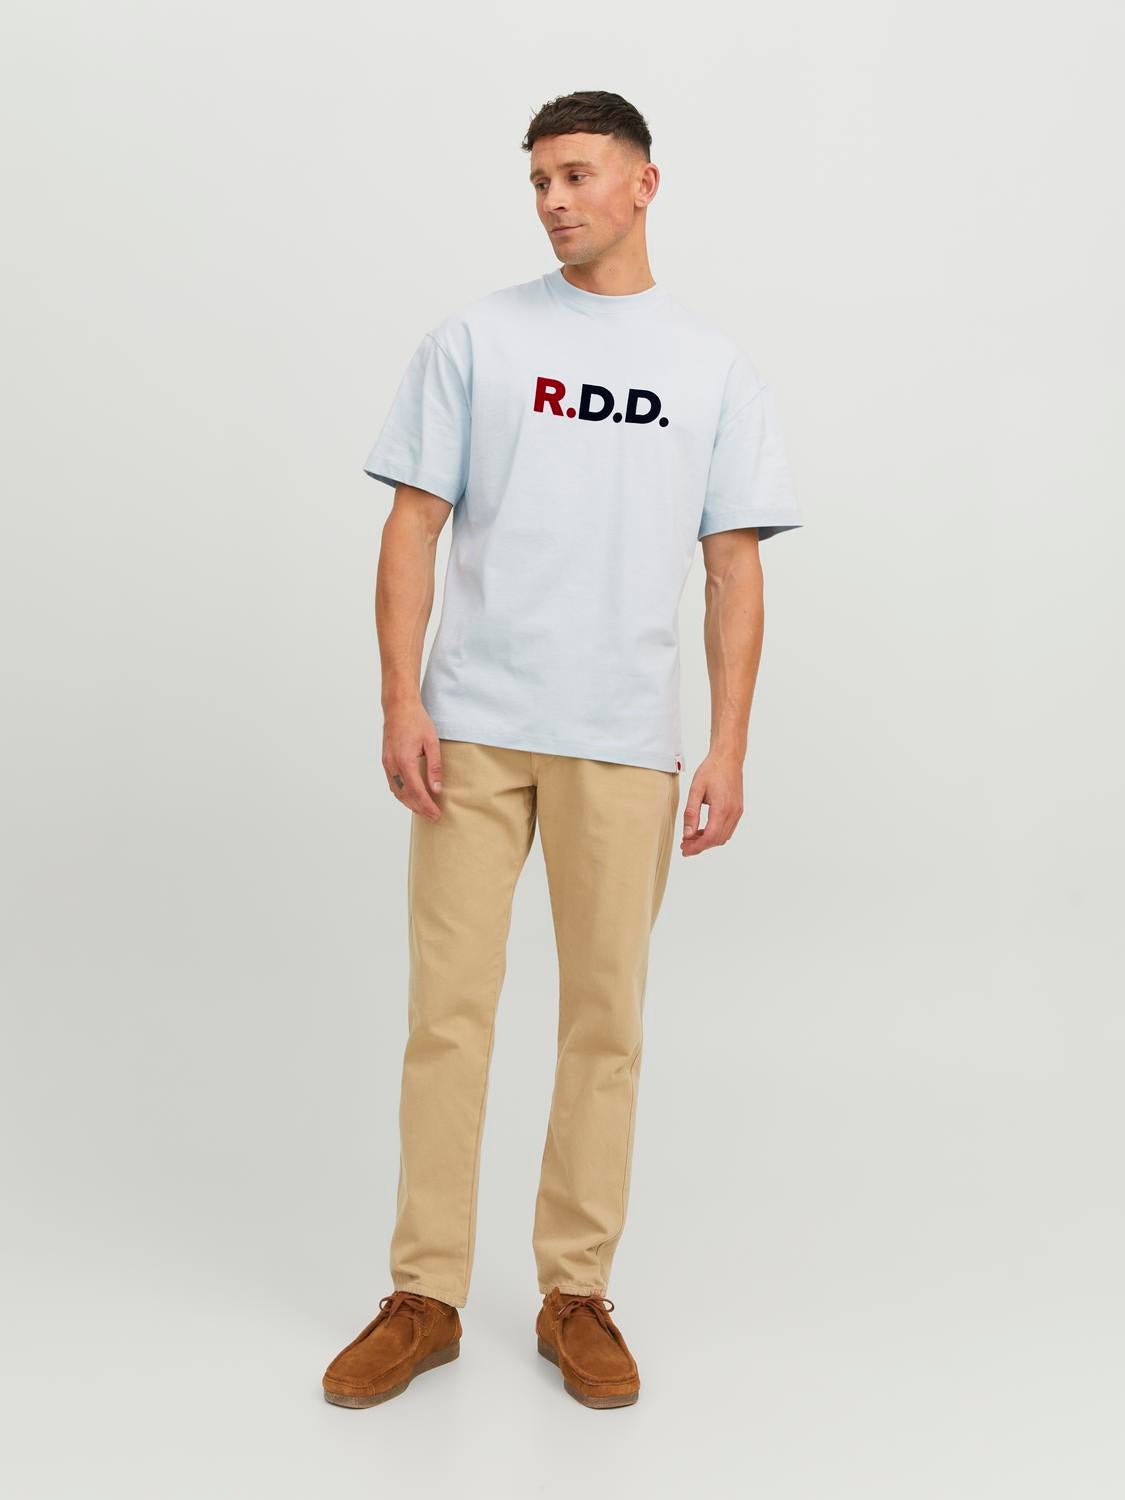 RDD T-shirt Con logo Girocollo